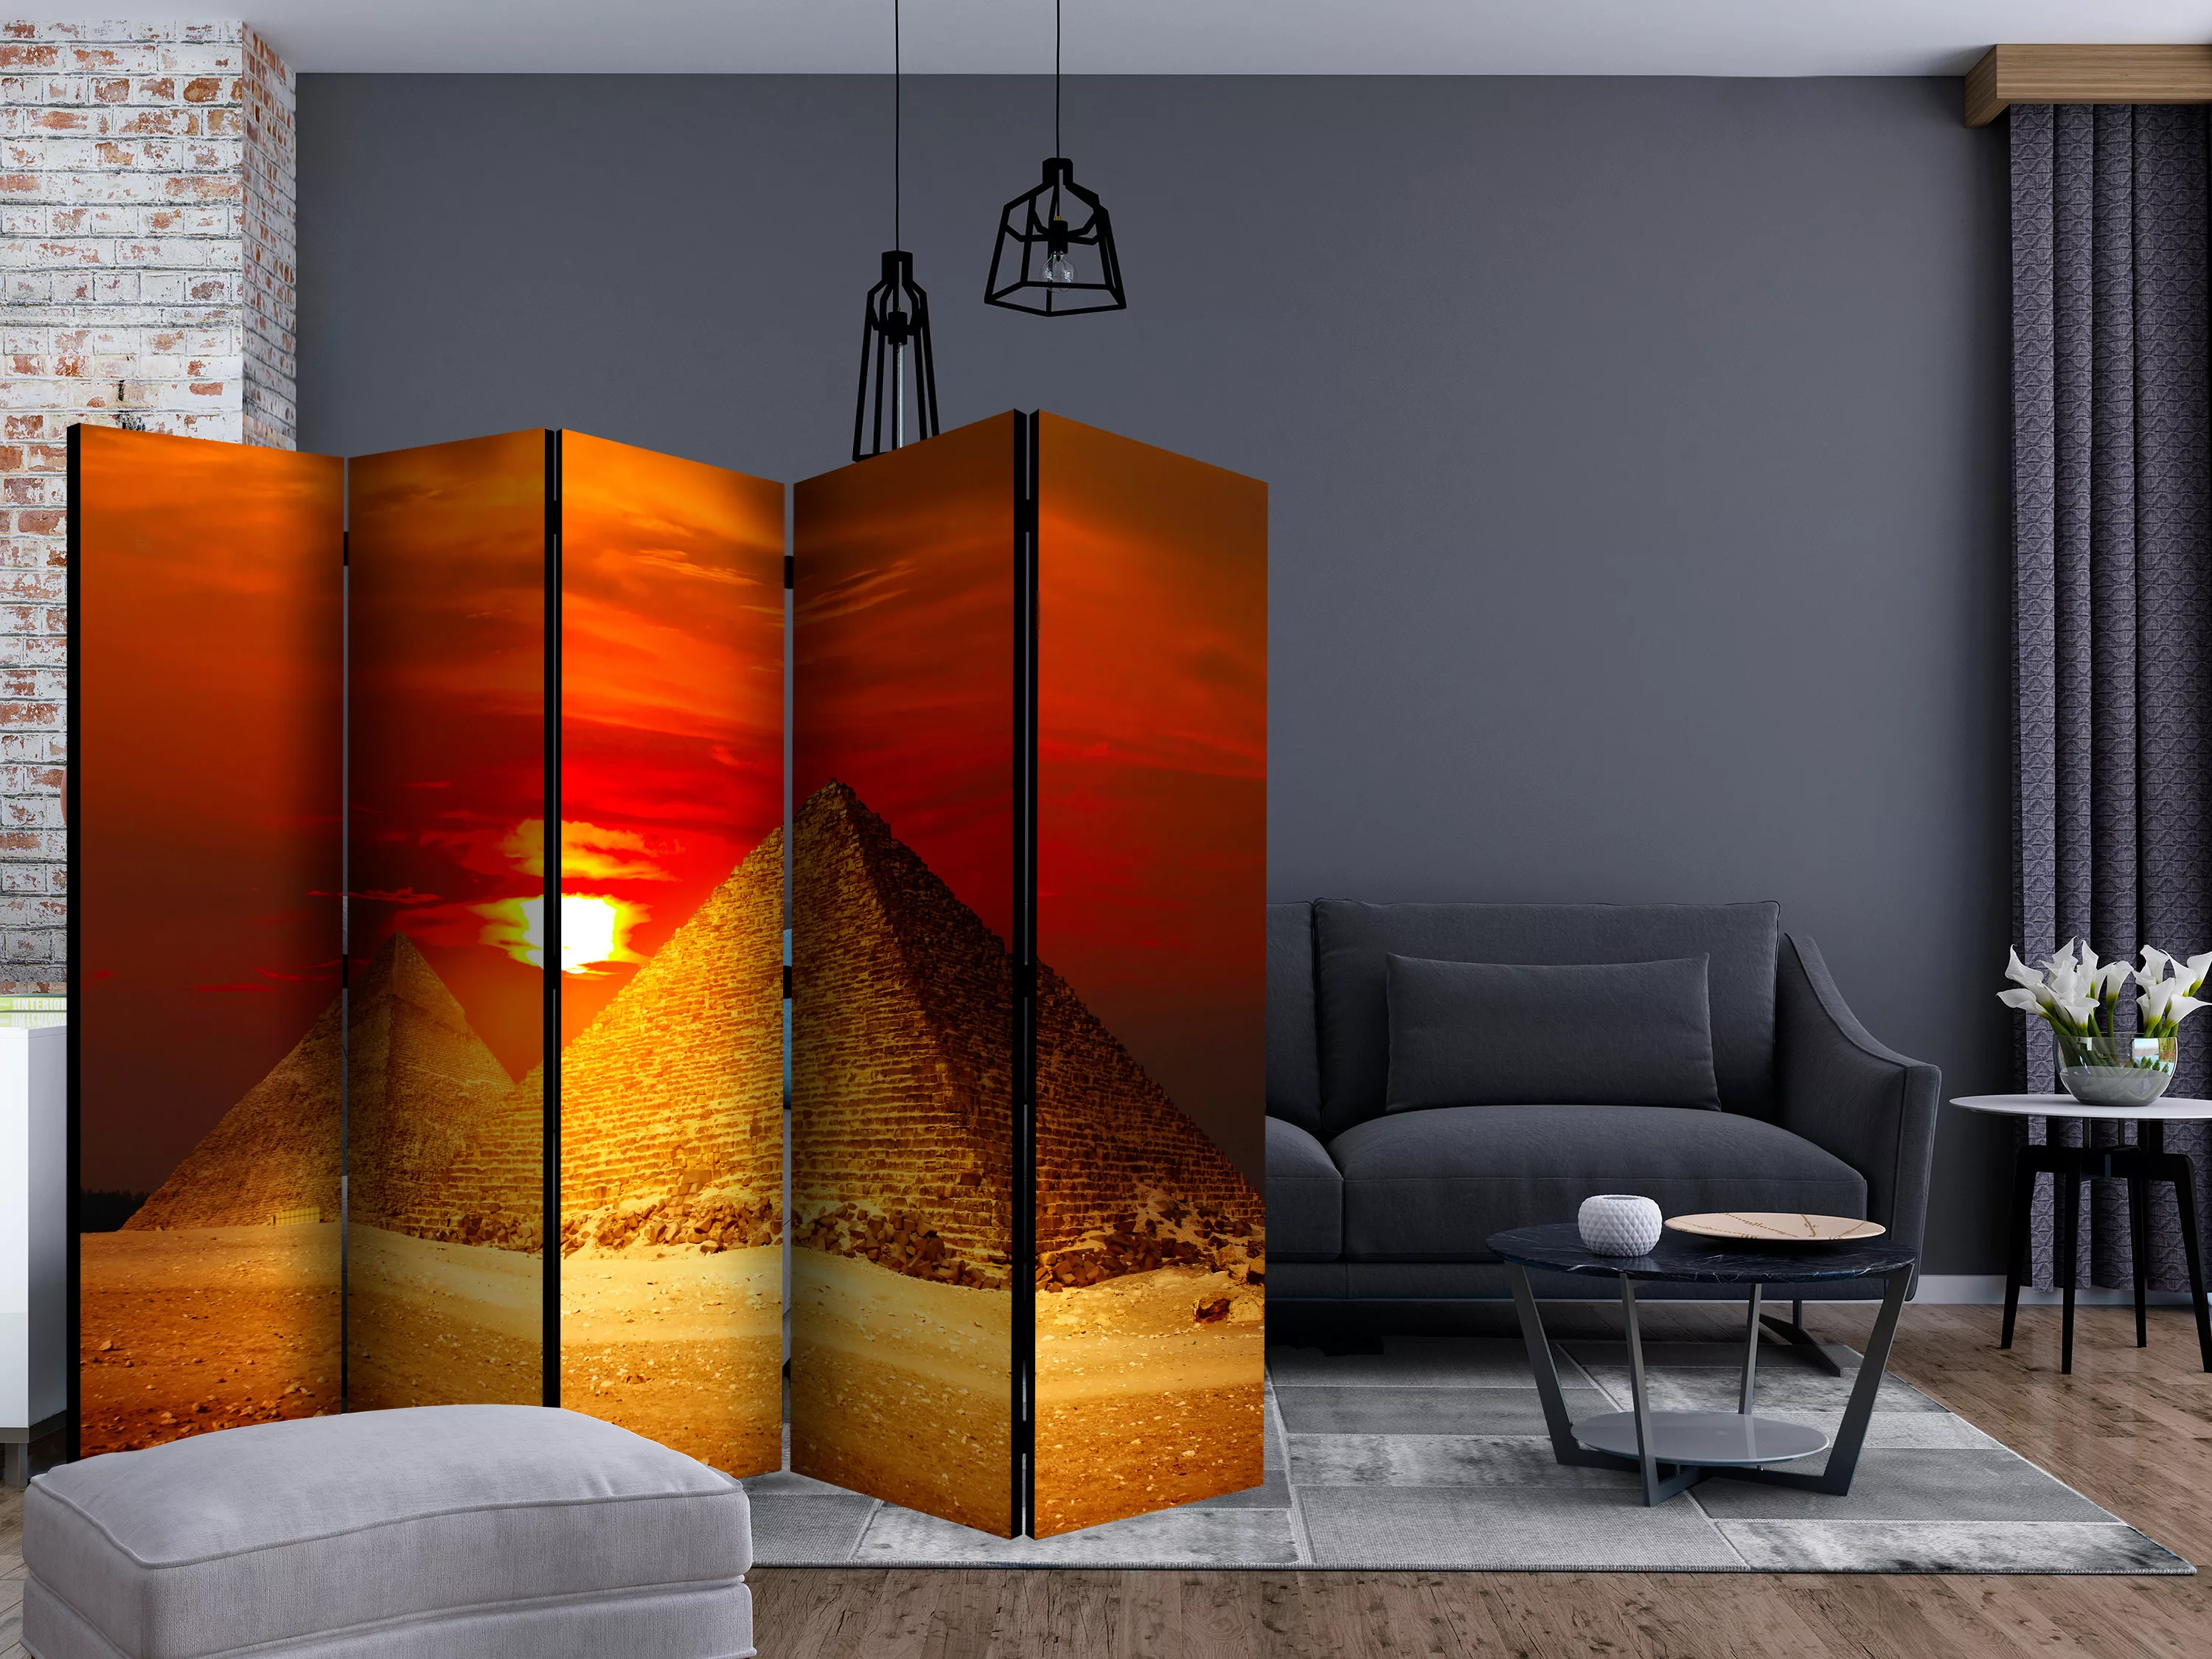 5-teiliges Paravent - The Giza Necropolis - Sunset Ii [room Dividers] günstig online kaufen